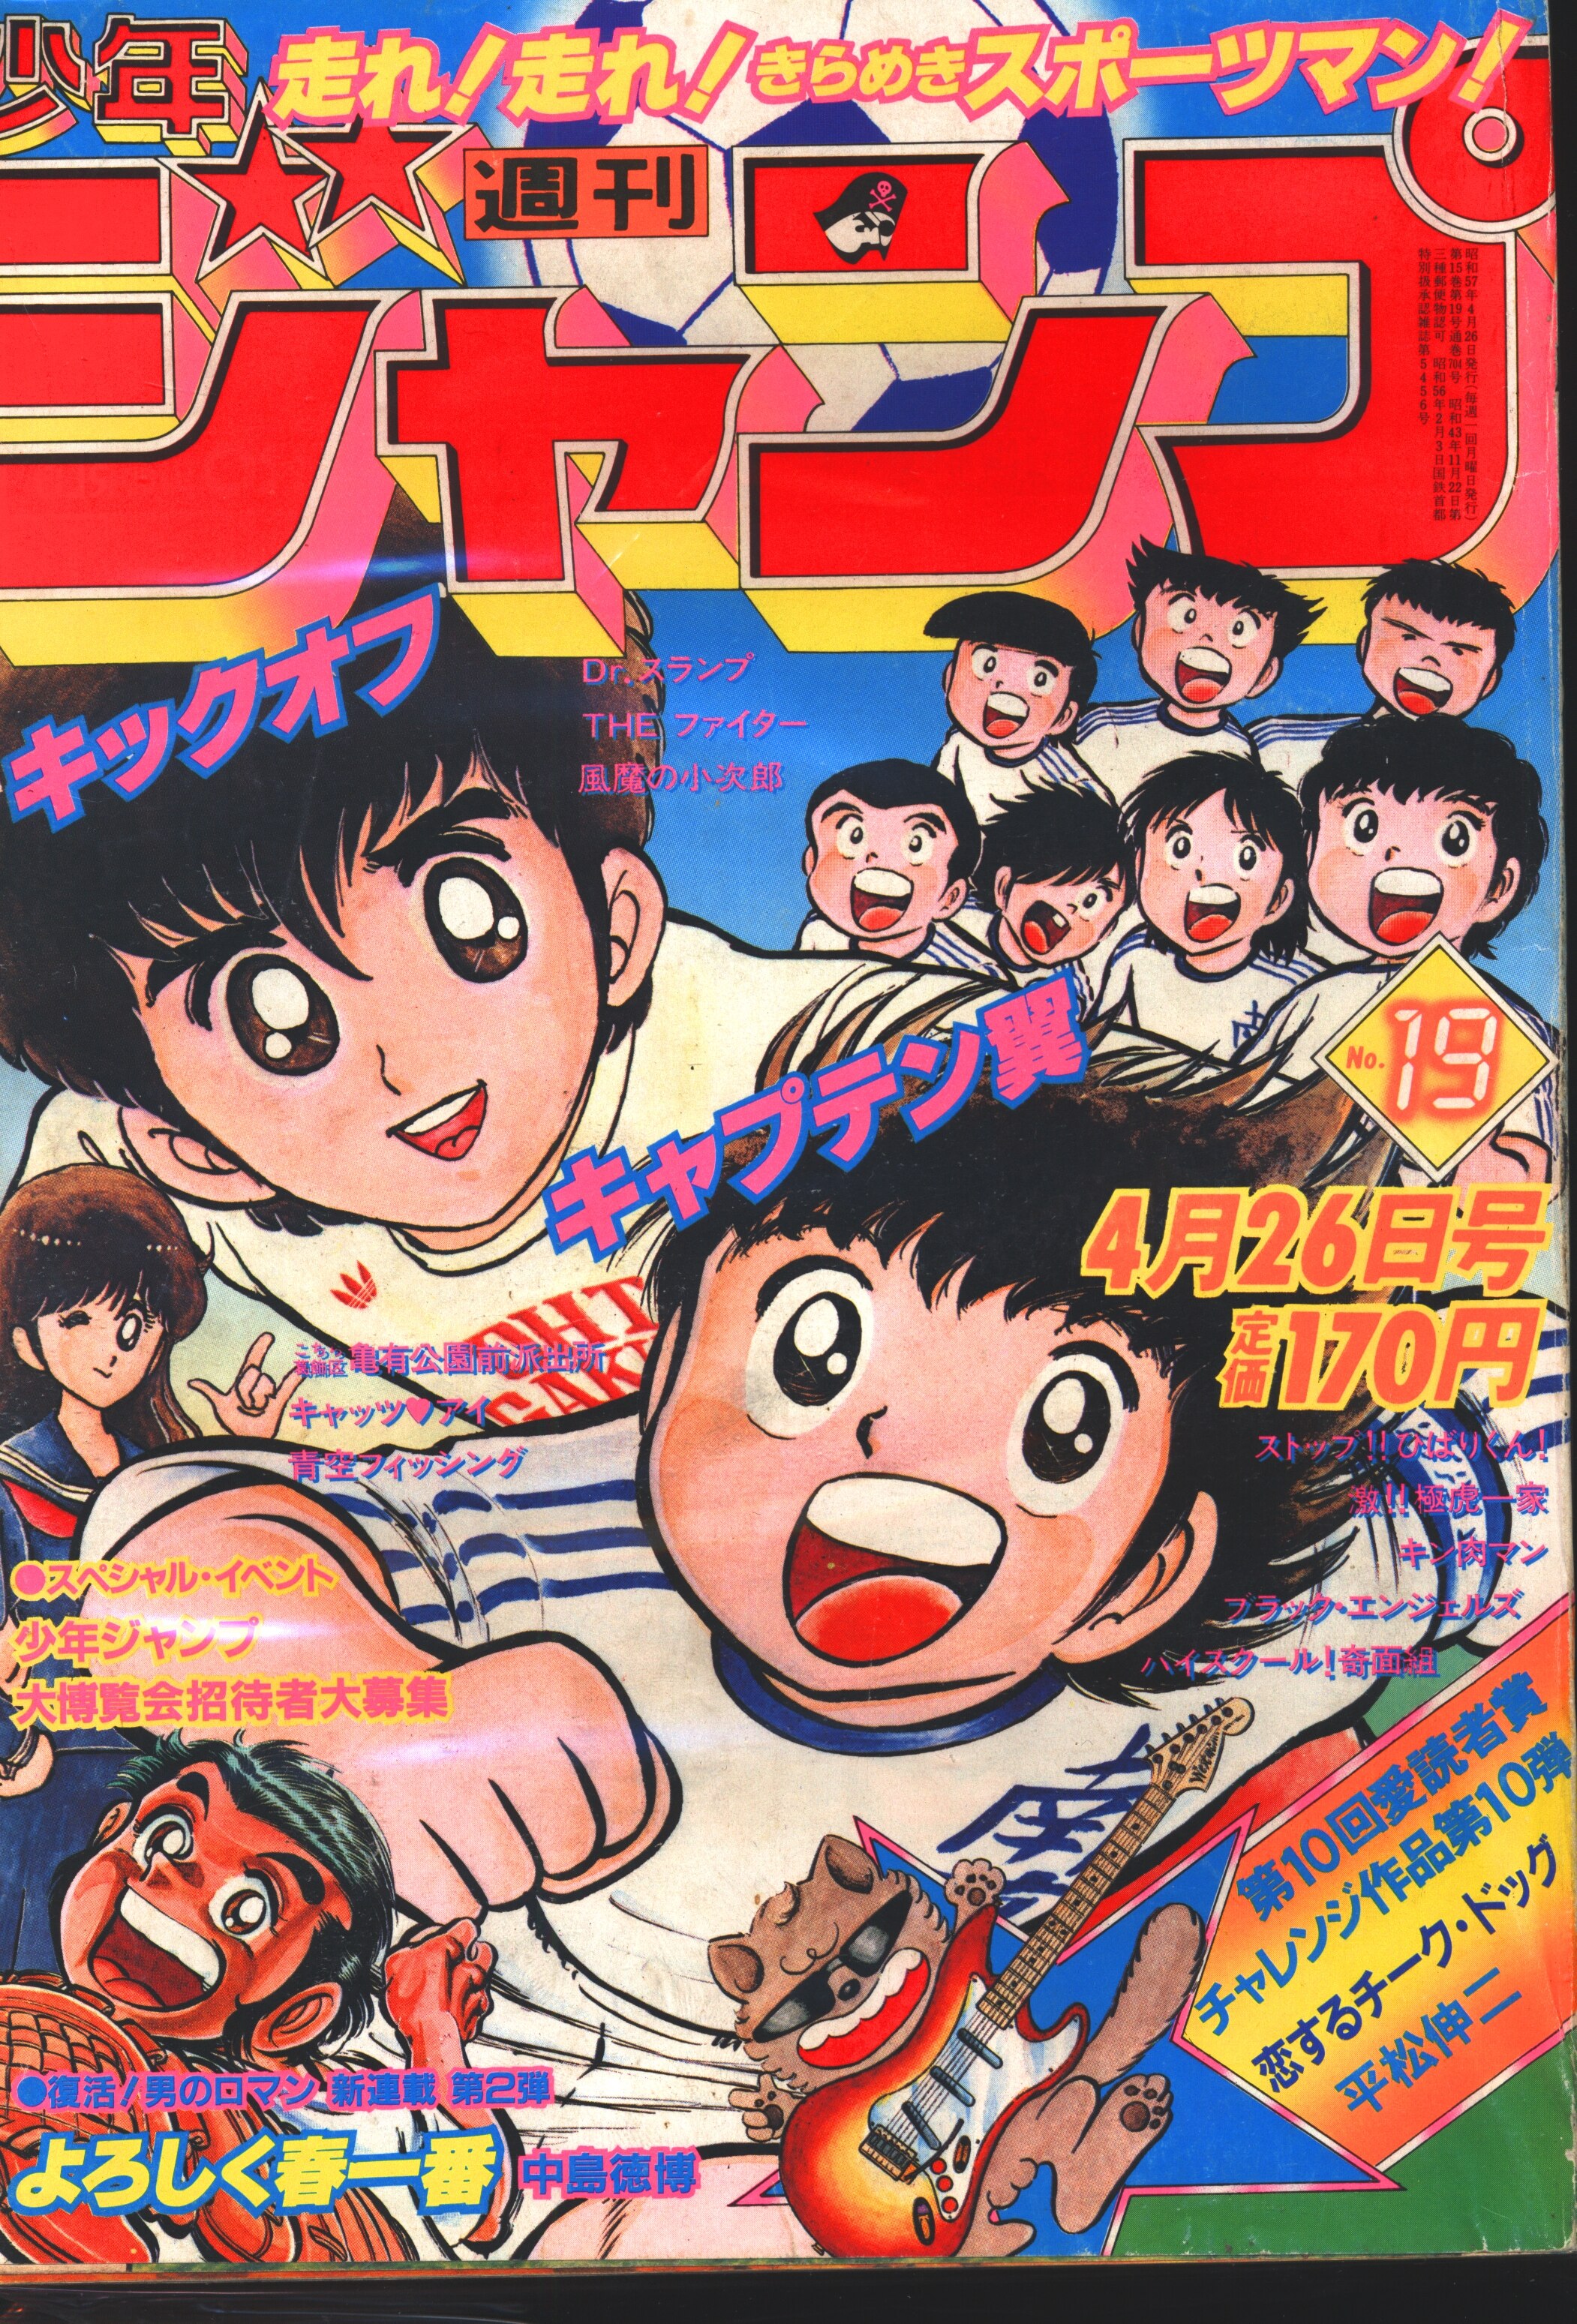 No3019/キャプテン翼 新連載 初号 週刊少年ジャンプ 1981年 18号 高橋 